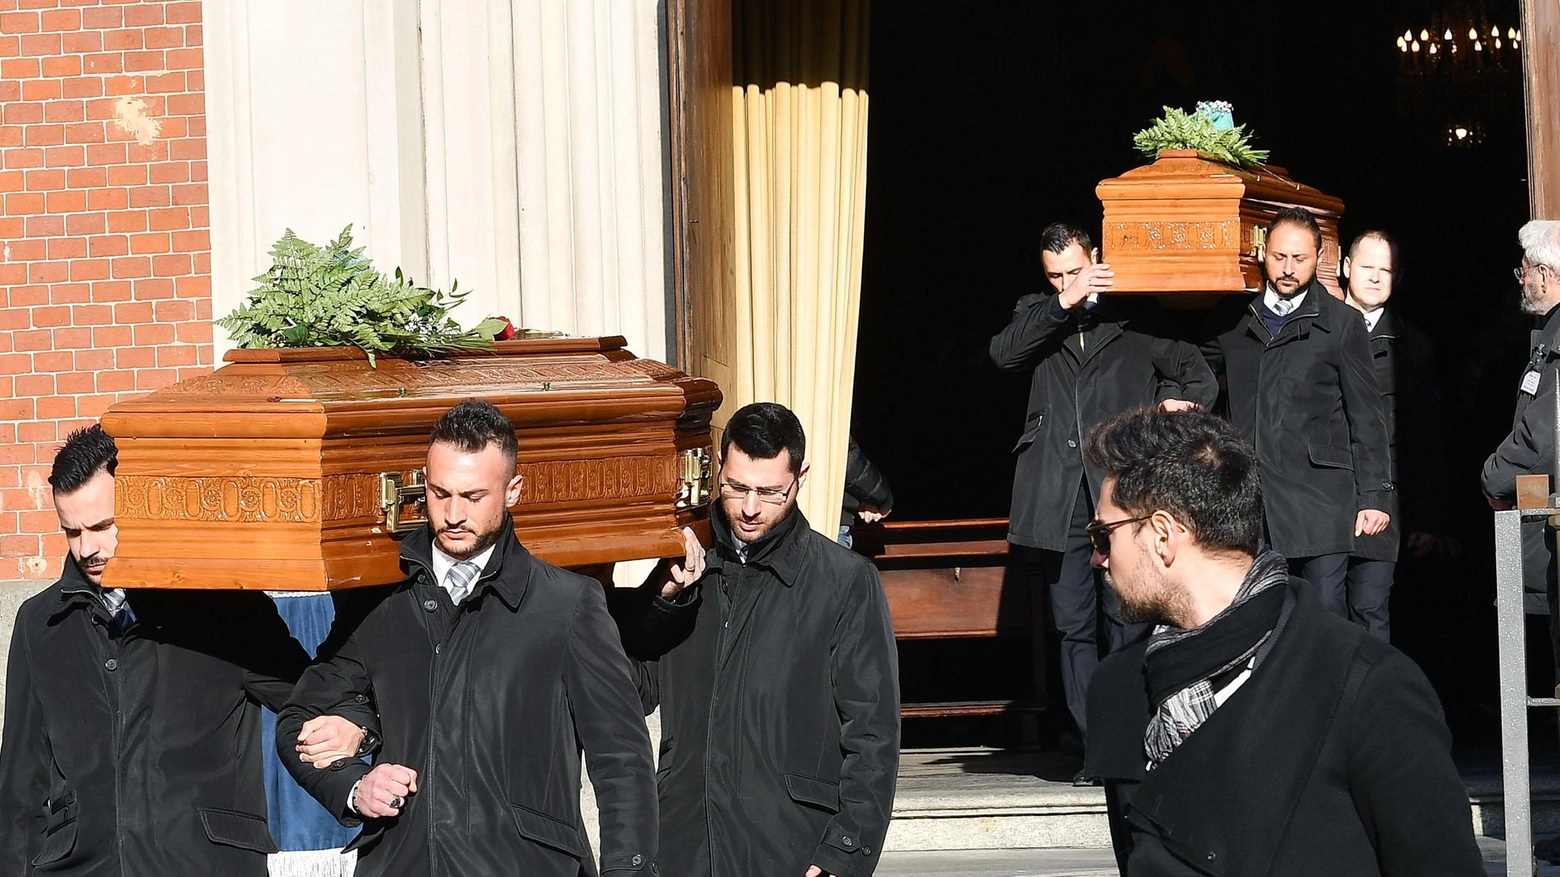 Coniugi uccisi a Ferrara, i funerali a Torino (Ansa)